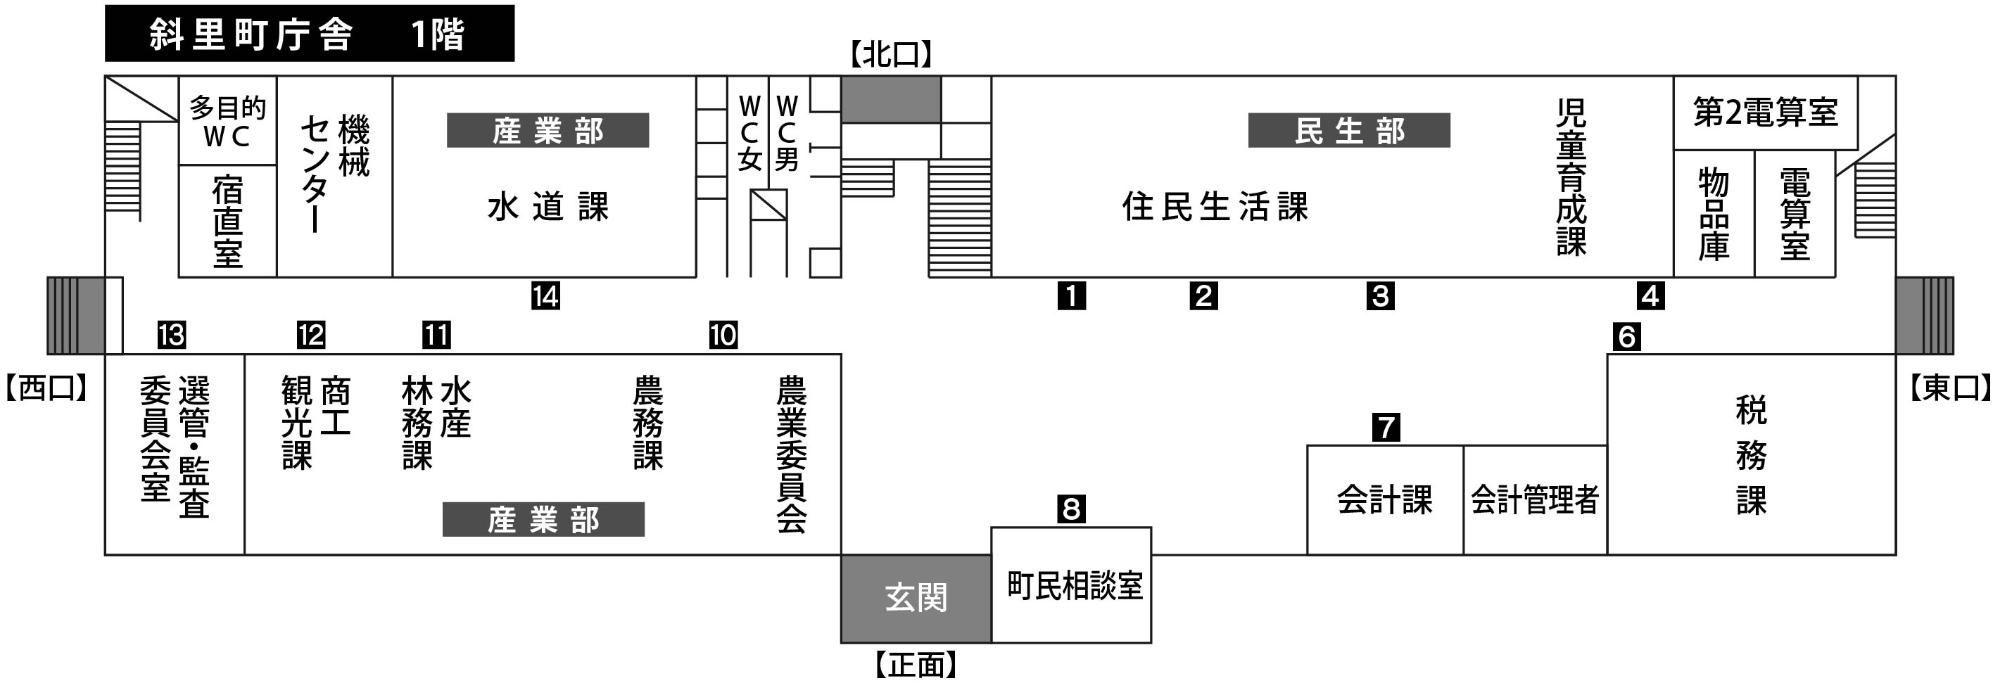 斜里町庁舎1階案内図